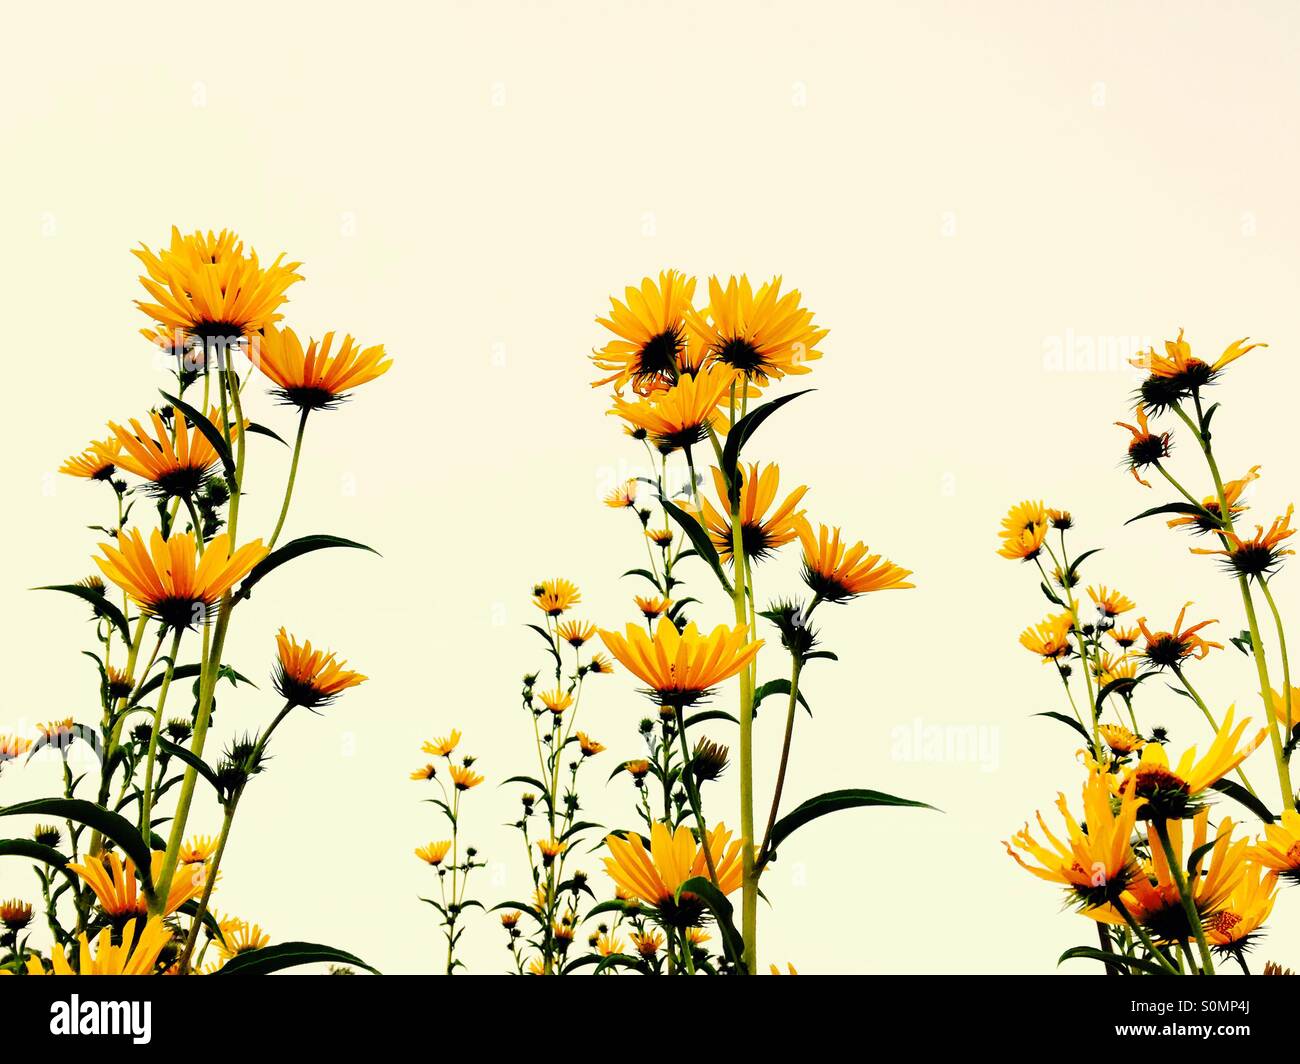 Di colore giallo brillante daisy-come i fiori per raggiungere il cielo. Foto Stock